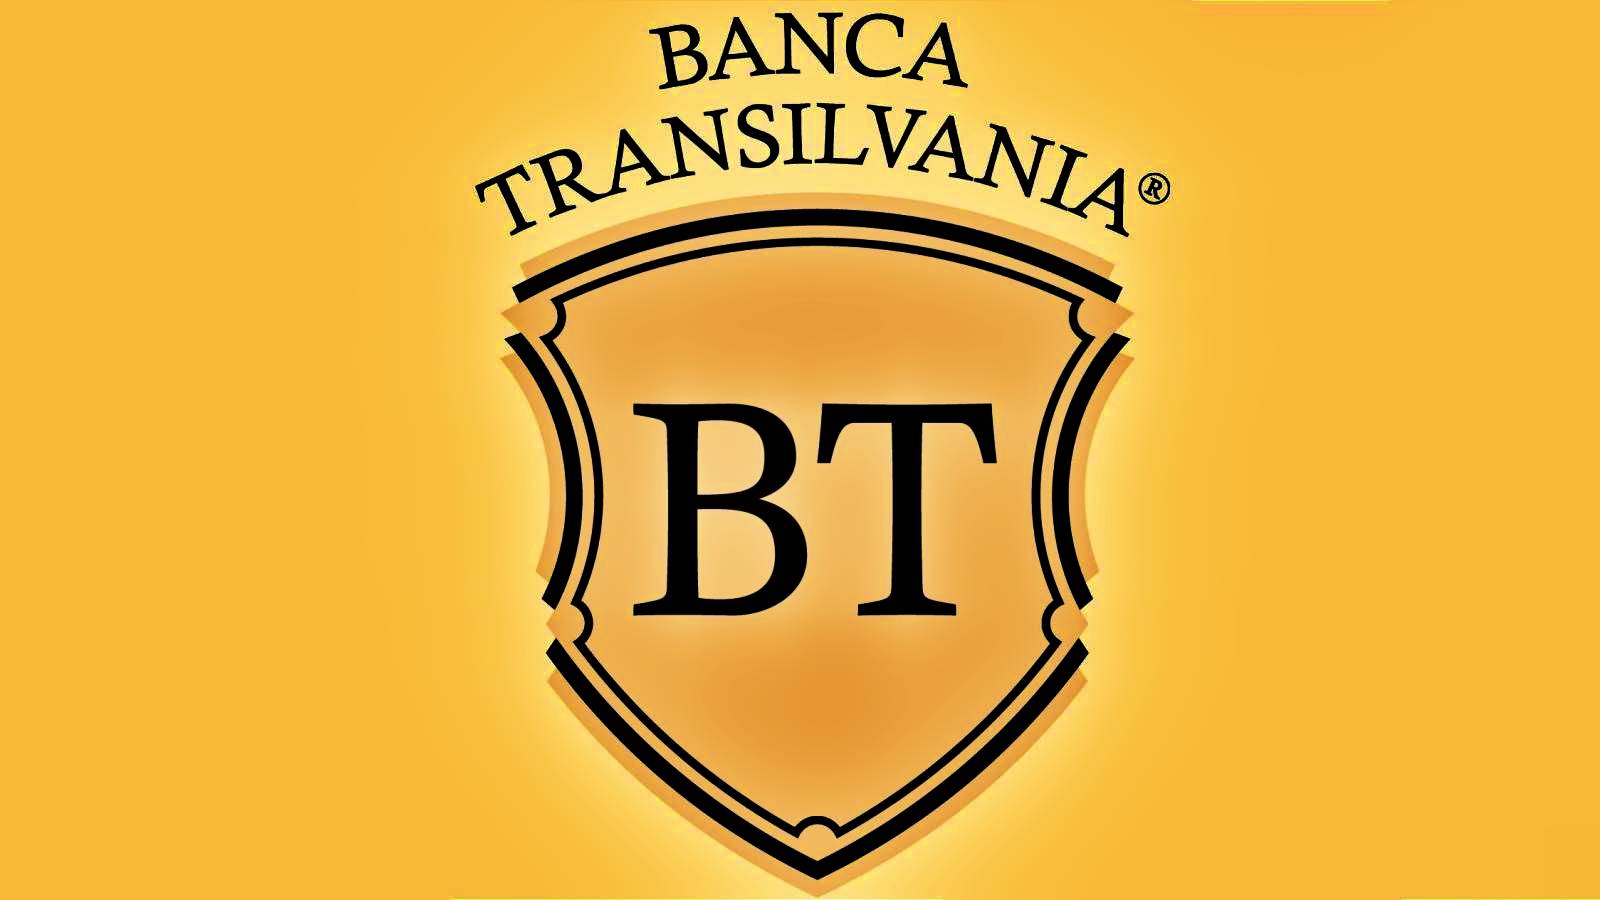 Les clients de BANCA Transilvania en Roumanie doivent être PRUDENTS